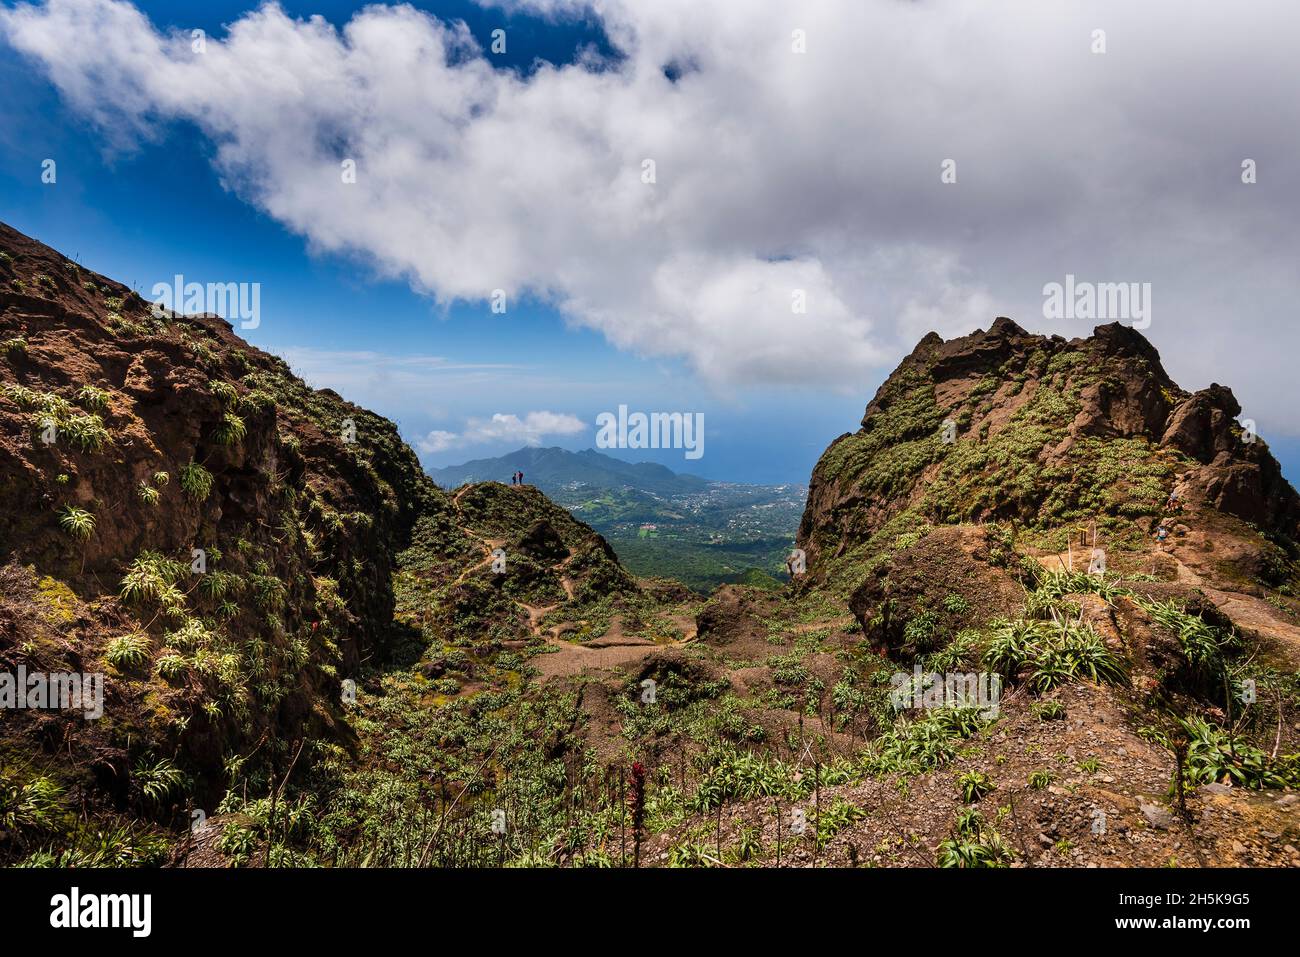 Randonneurs debout au sommet des falaises rocheuses du volcan, la Soufrière surplombant la campagne sur la Basse-Terre ; Guadeloupe, Antilles françaises Banque D'Images